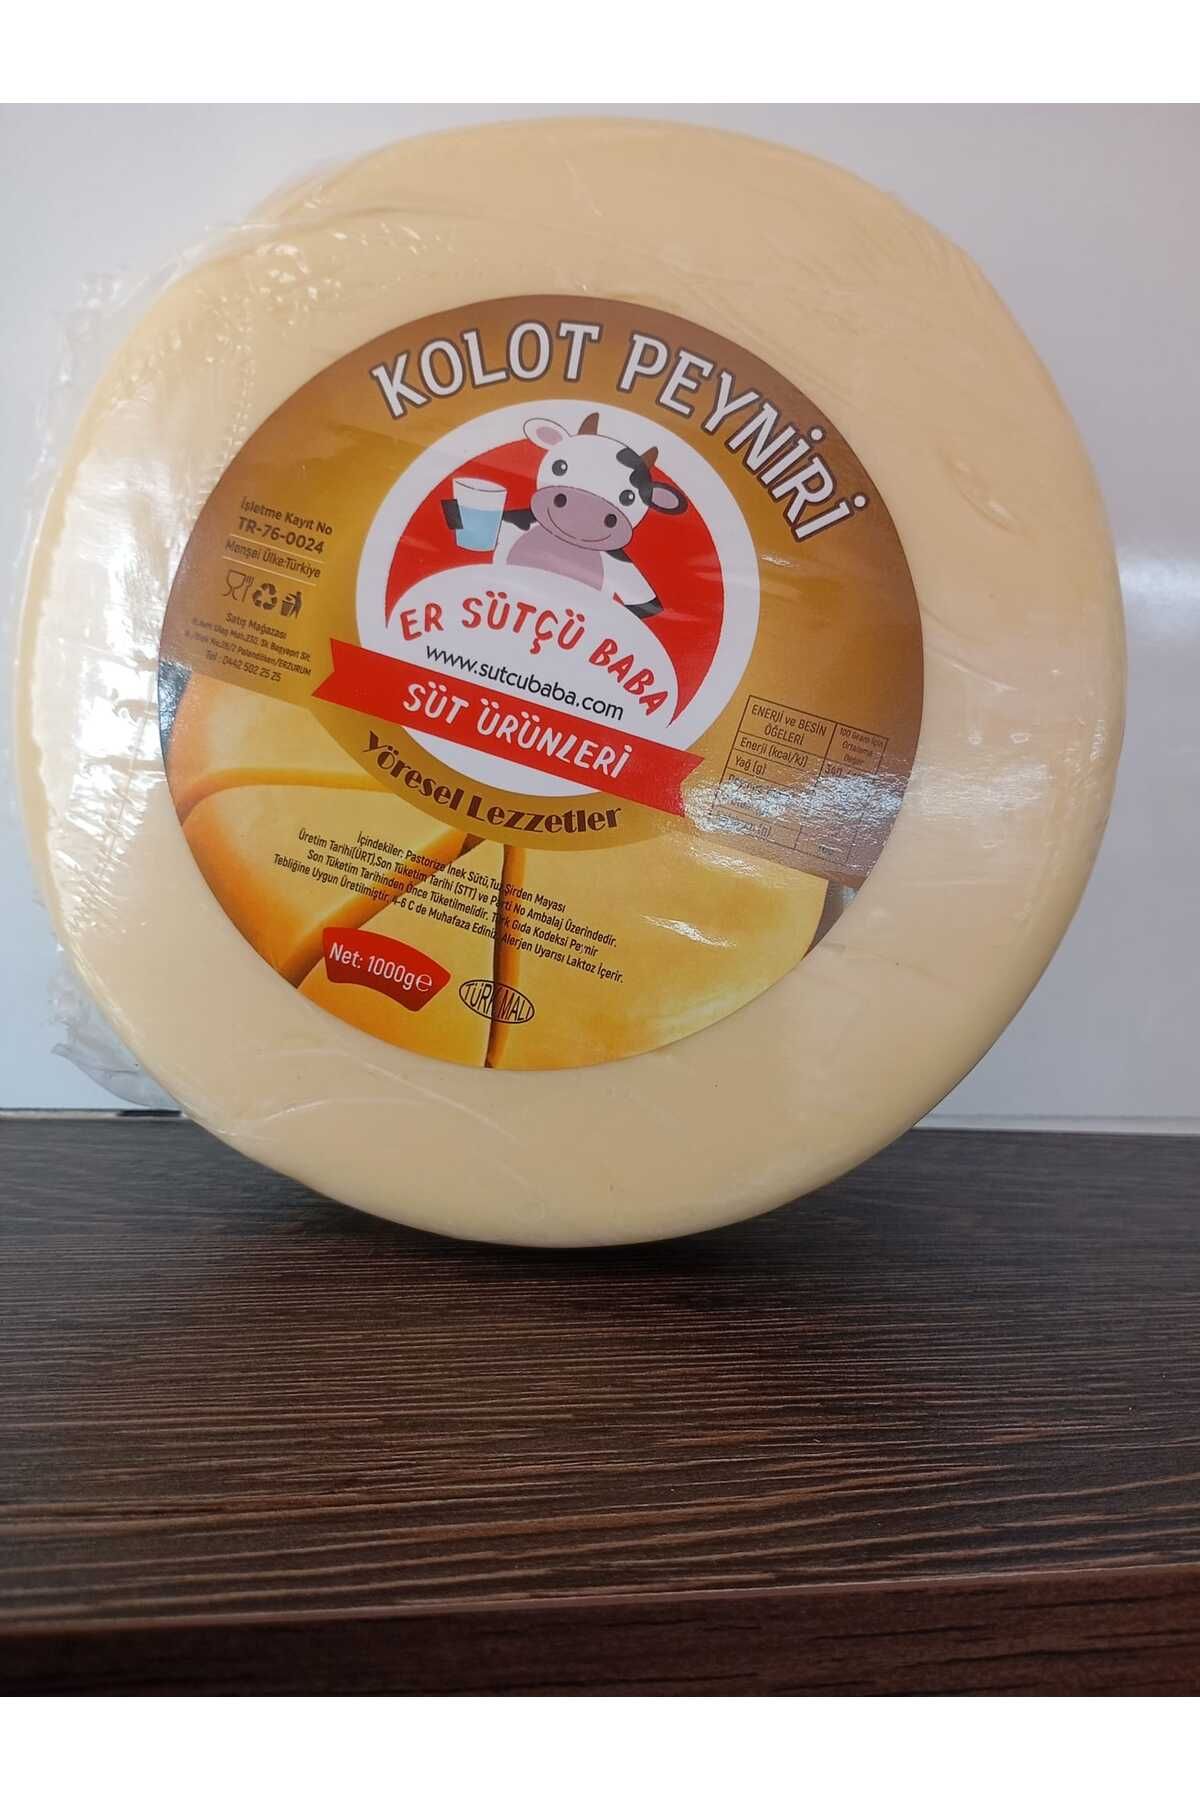 sütçübaba erSÜTÇÜ BABA Kolot (mıhlama Peynir) 1000 Gram